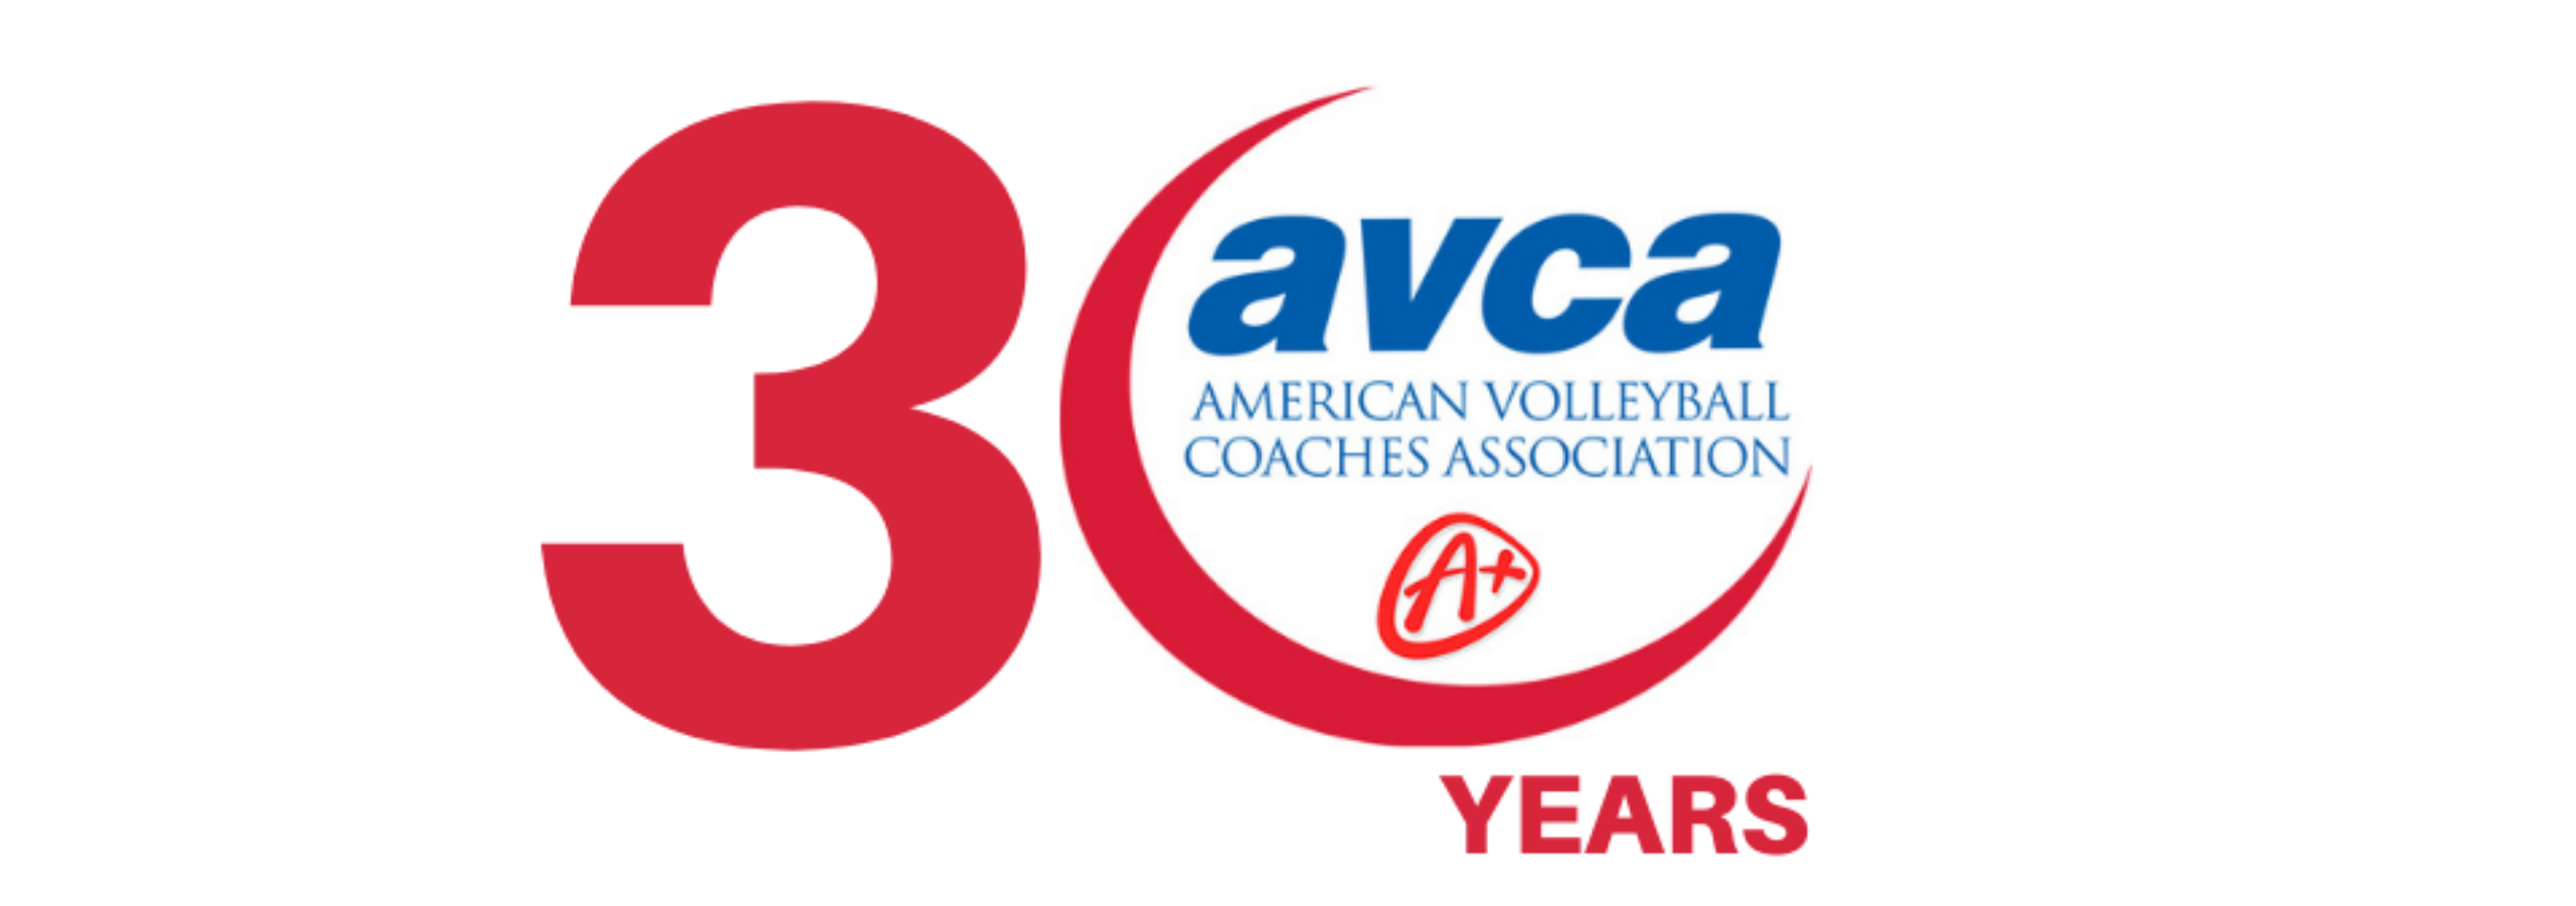 NC Wesleyan Volleyball Wins AVCA Team Academic  Award